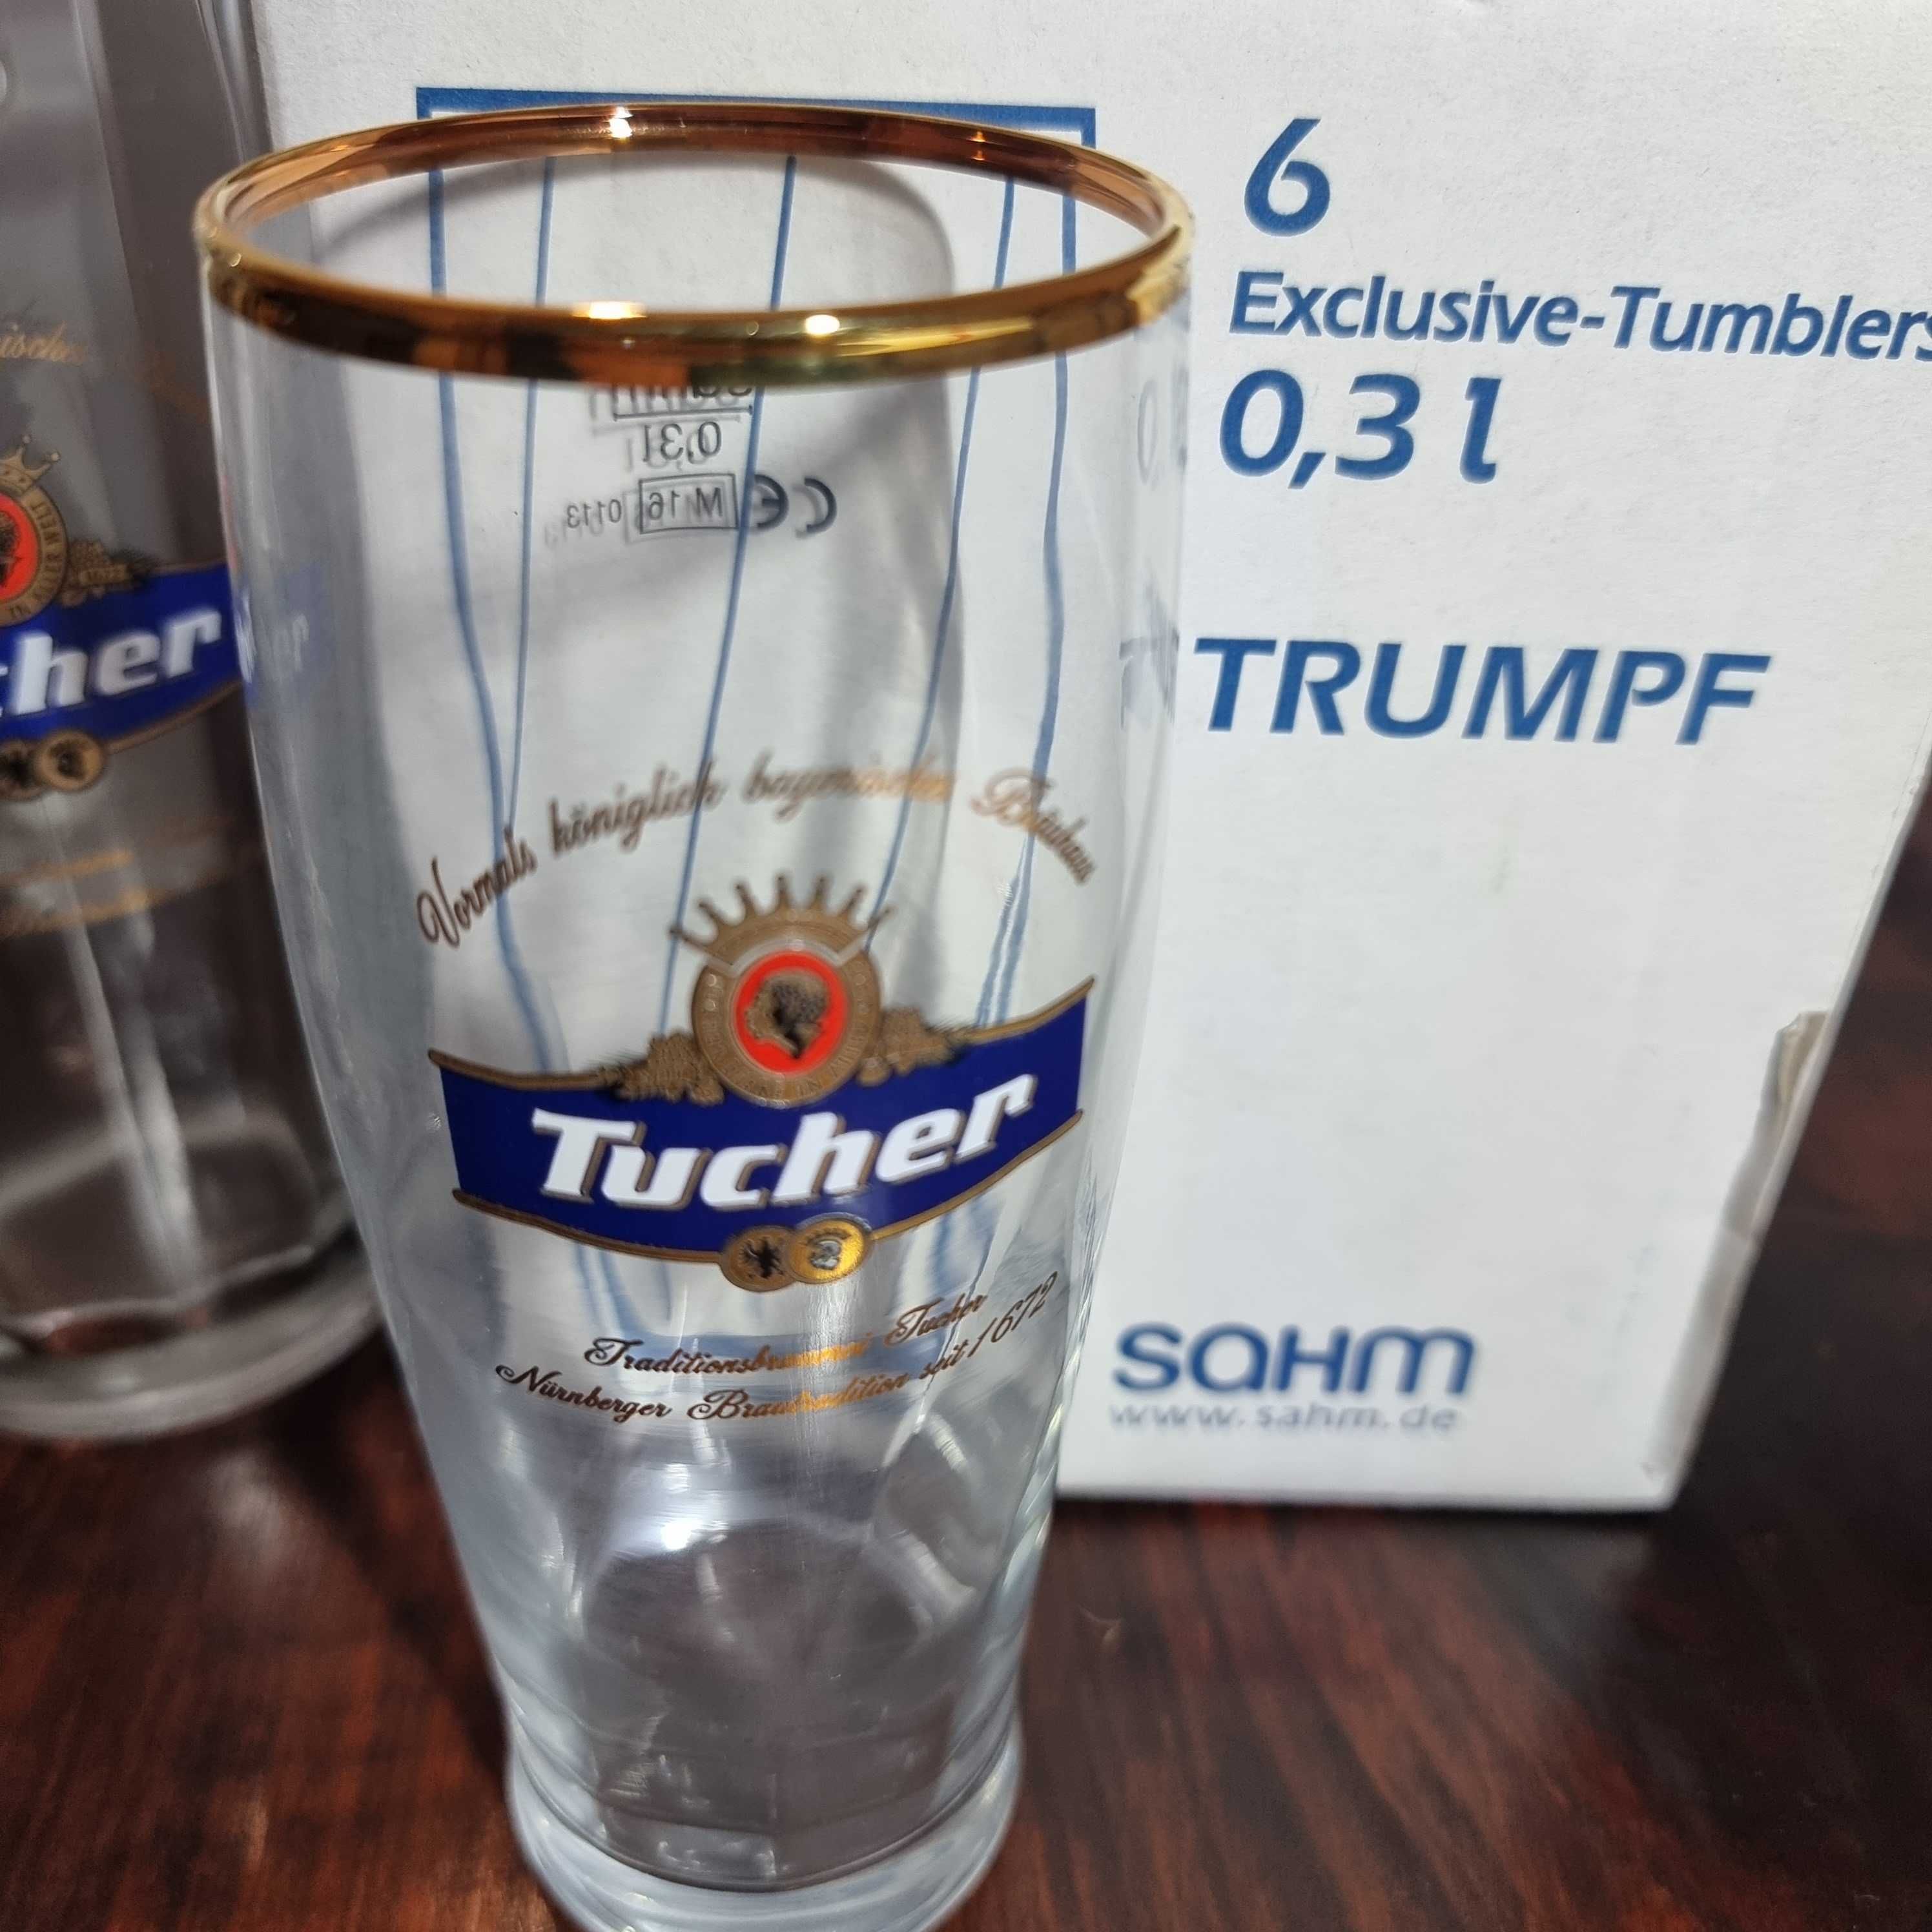 SAHM TRUMPF Tucher nowe kolekcjonerskie szklanki do piwa, nieużywane